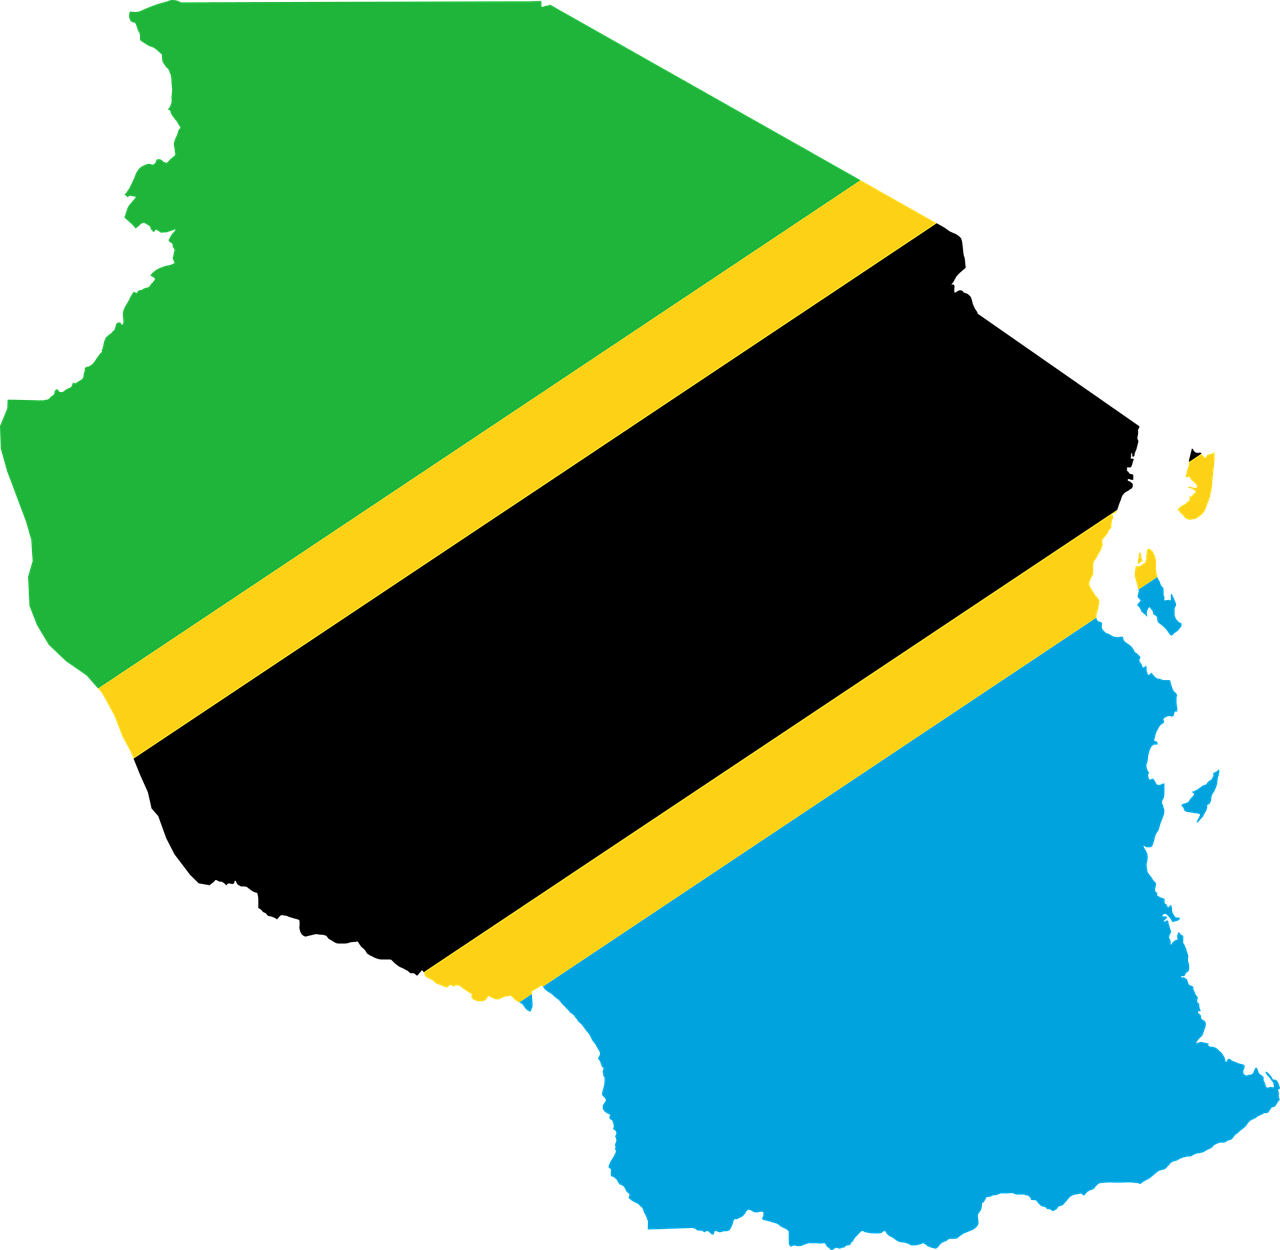 탄자니아 킬리만자로 커피 생산국의 국기와 국토 모양